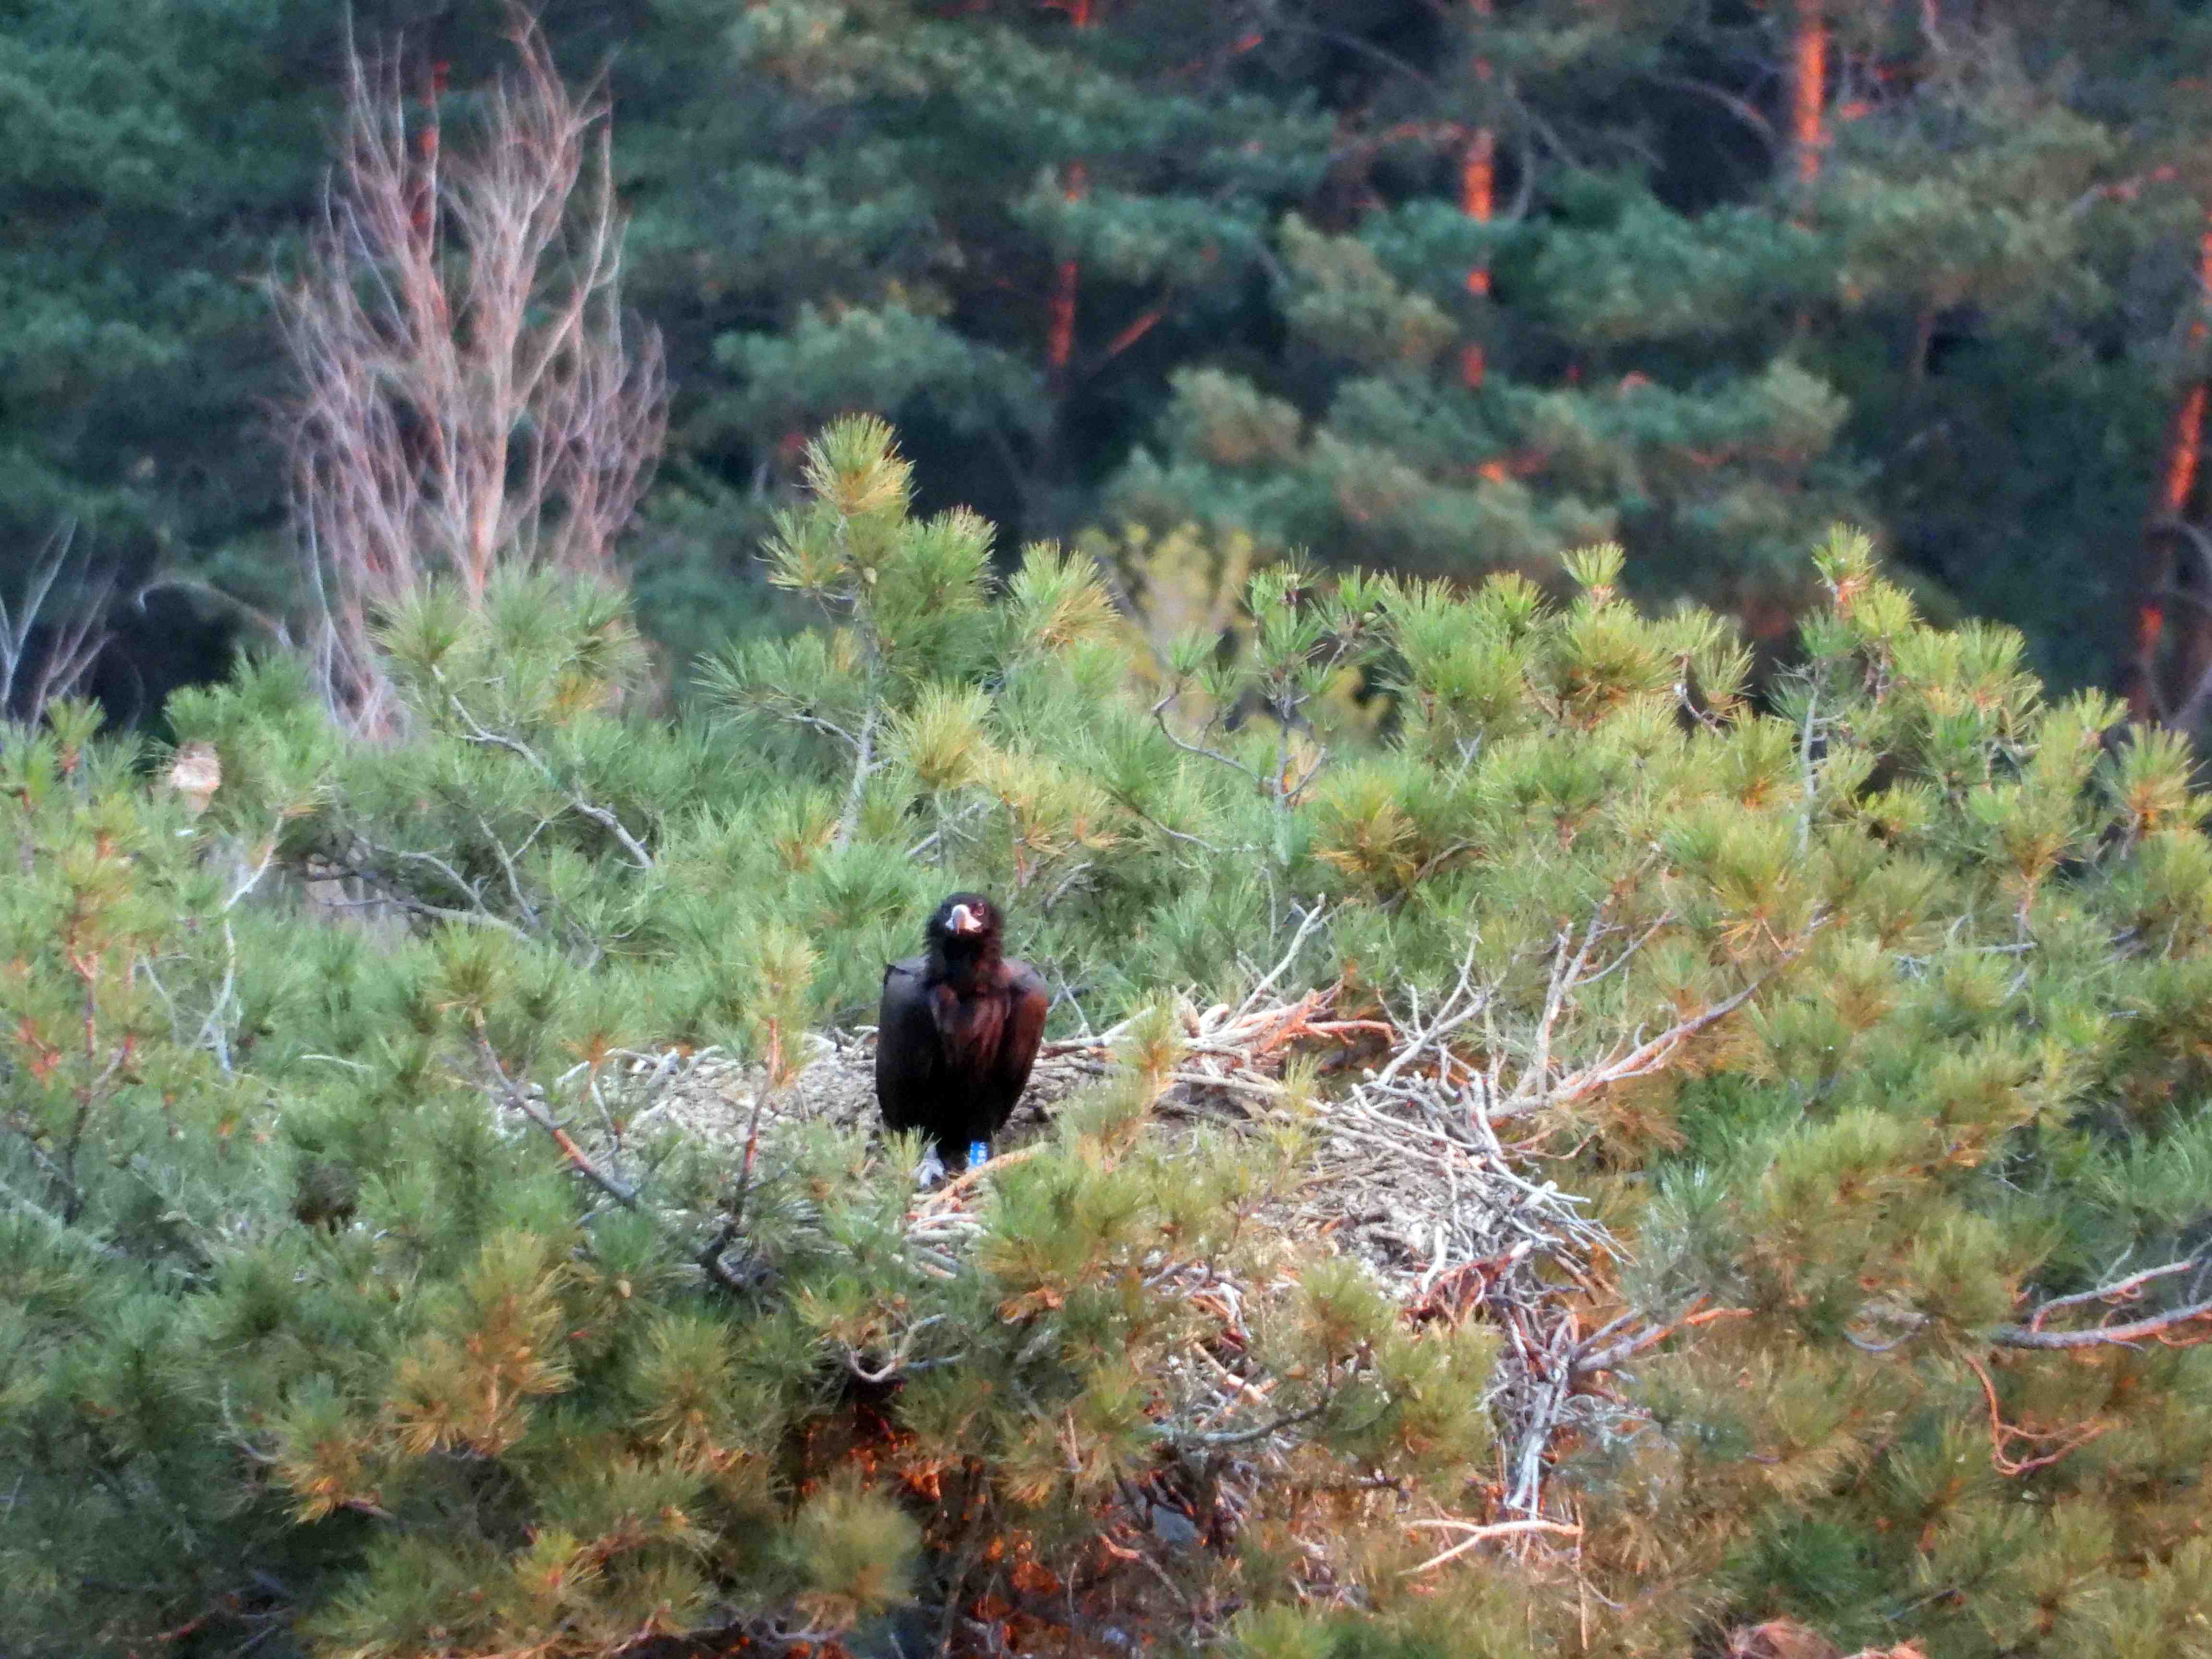 El buitre negro intoxicado por diclofenaco, fotografiado con vida dos días antes de conocerse su muerte en el nido. Imagen: Grefa